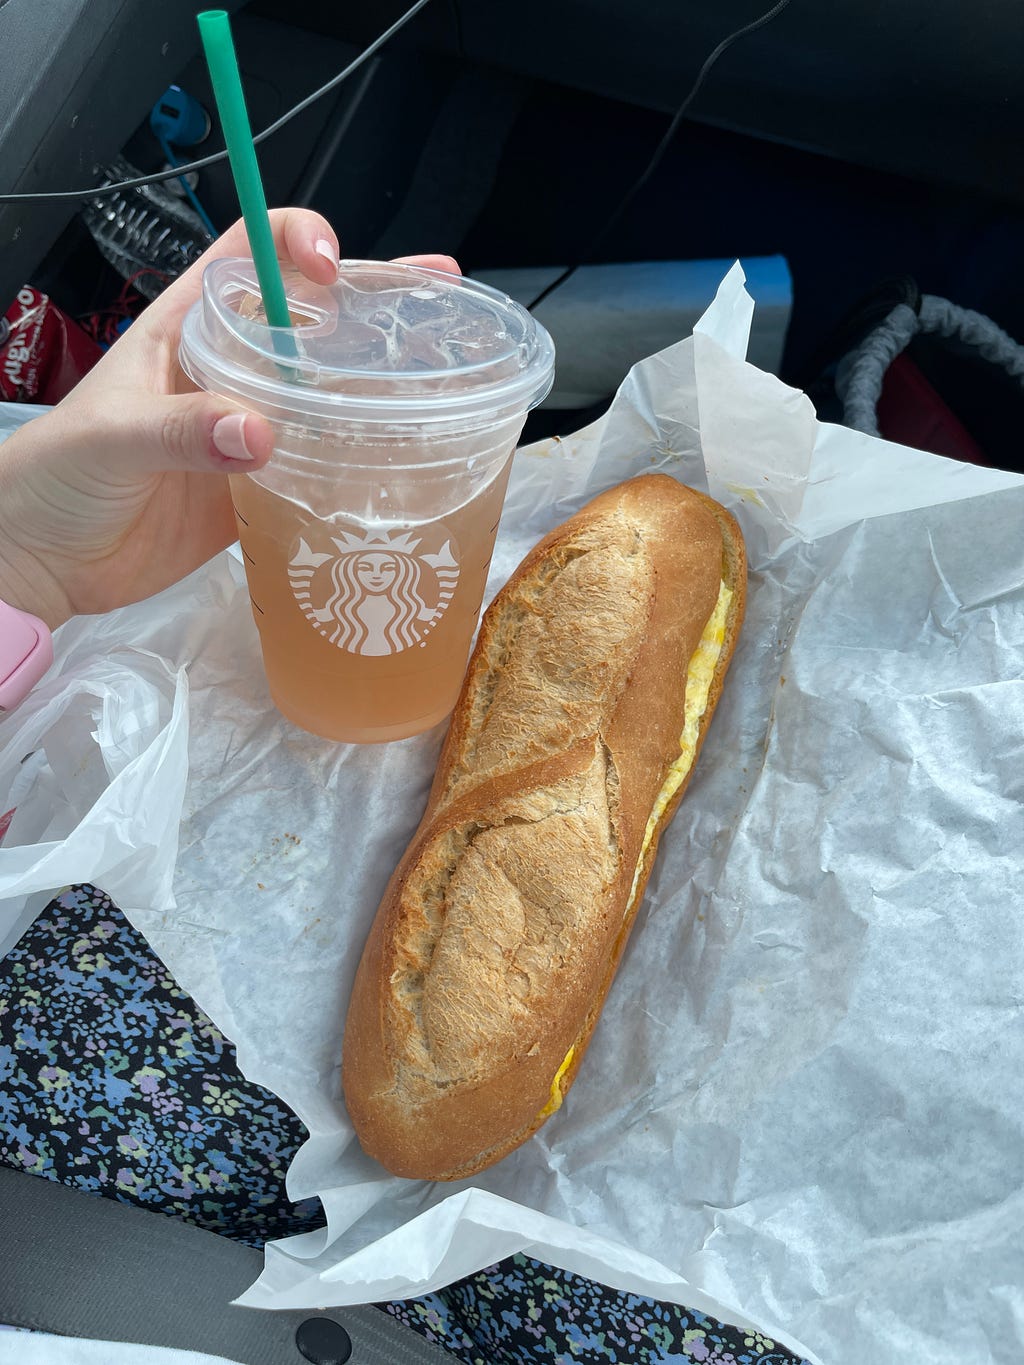 Road trip essentials, Starbucks green tea, and bánh mì